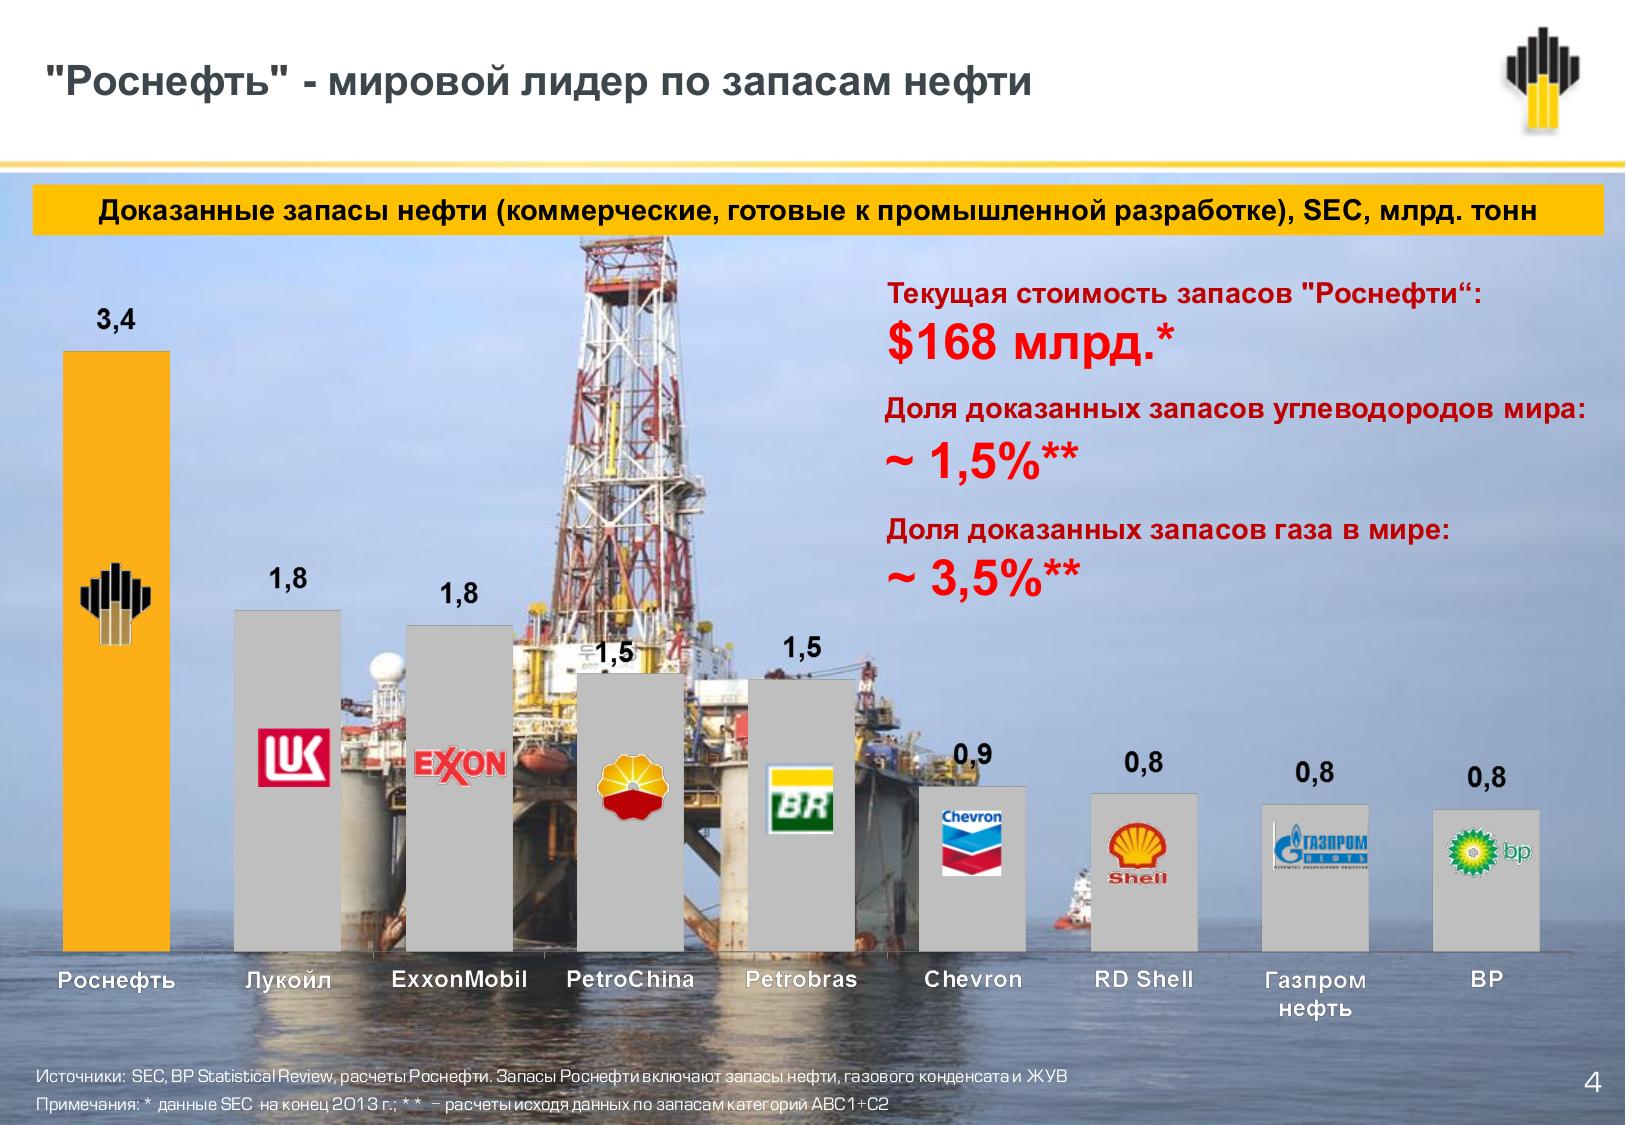 Легкие нефти россии. Российские нефтяные компании. Иностранные нефтяные компании. Крупные нефтегазовые компании. Нефтяная компания Роснефть.